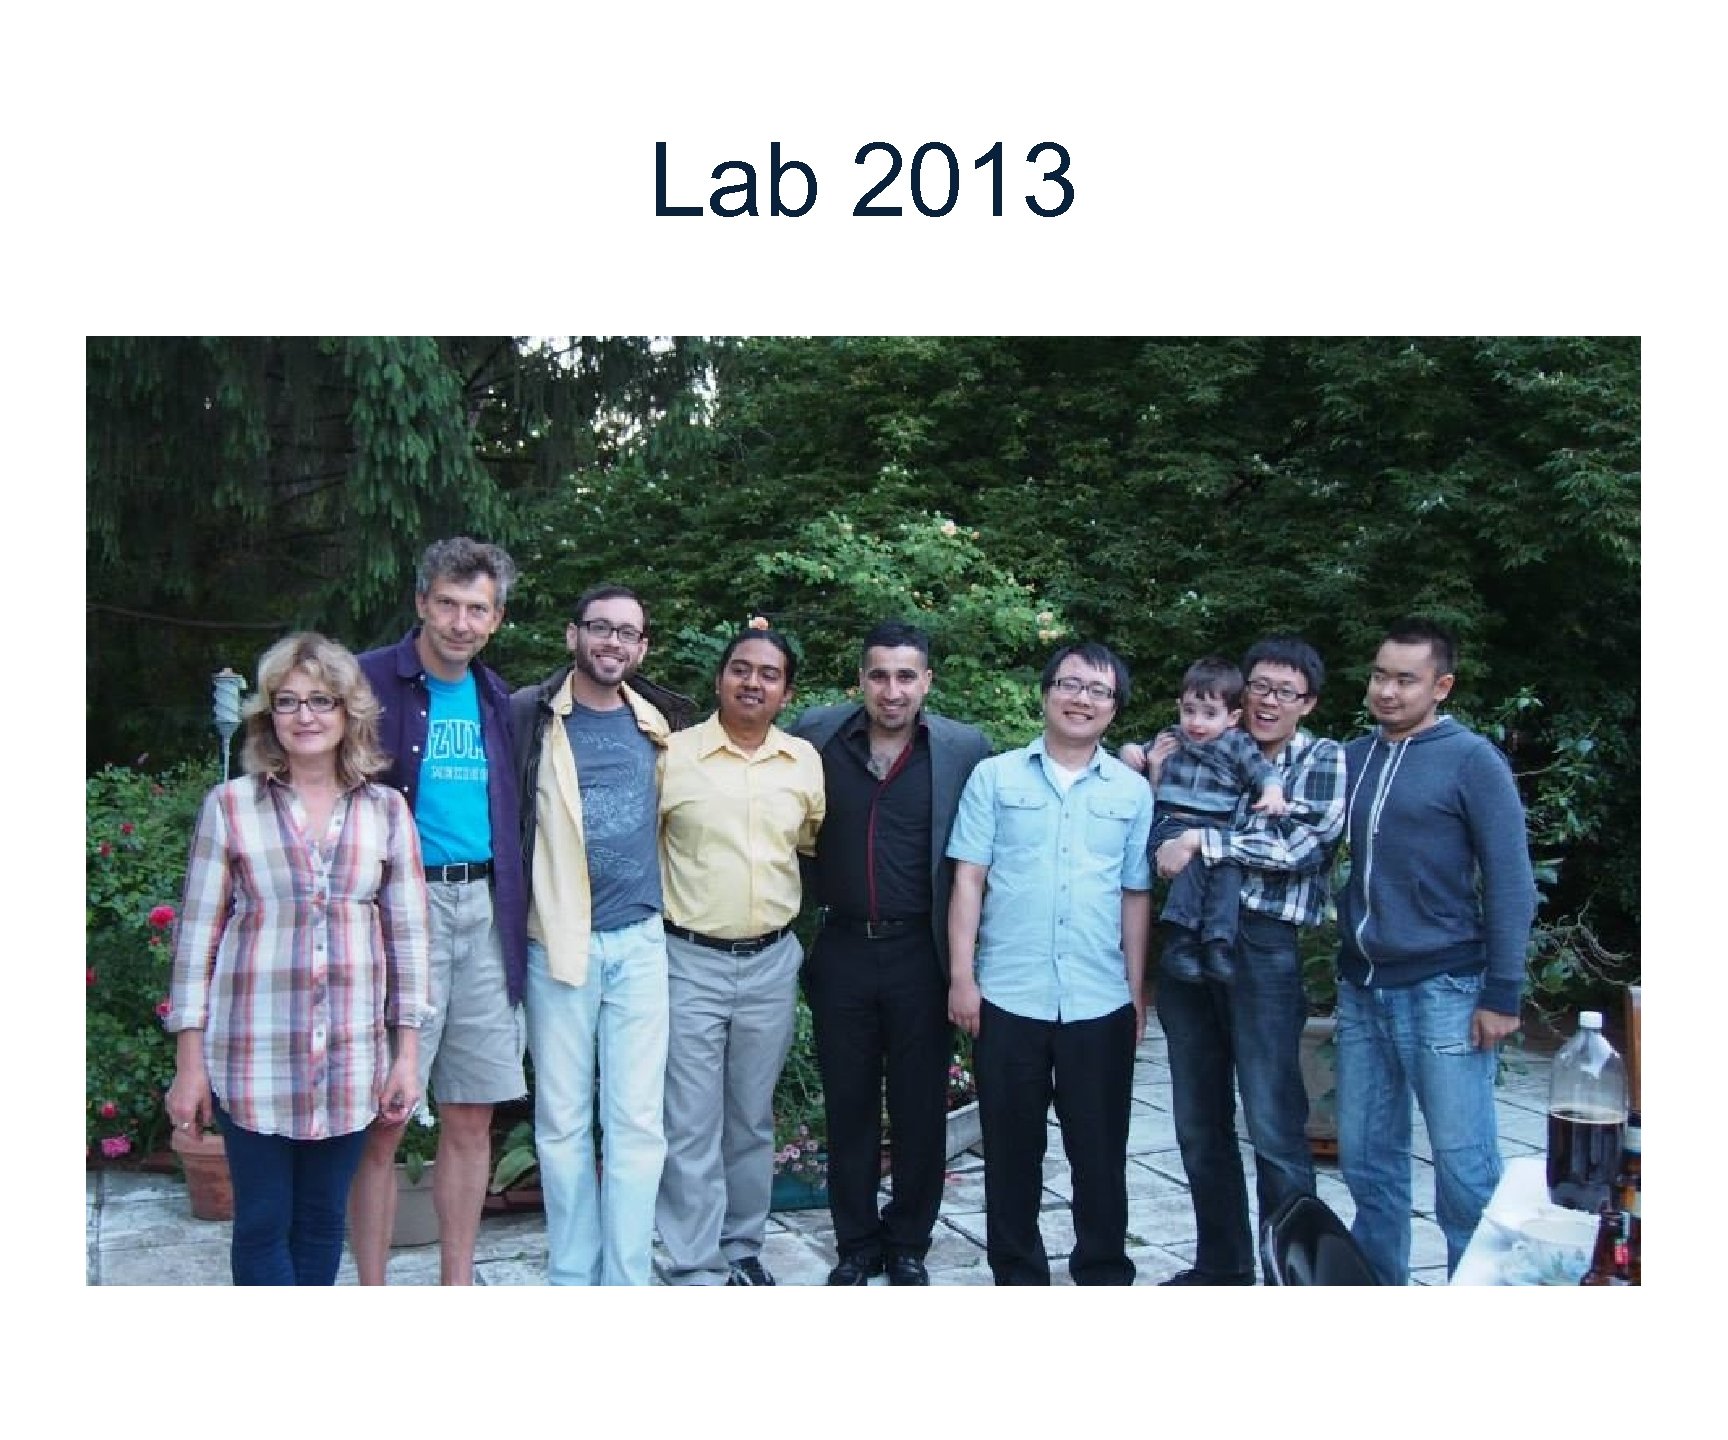 Lab 2013 